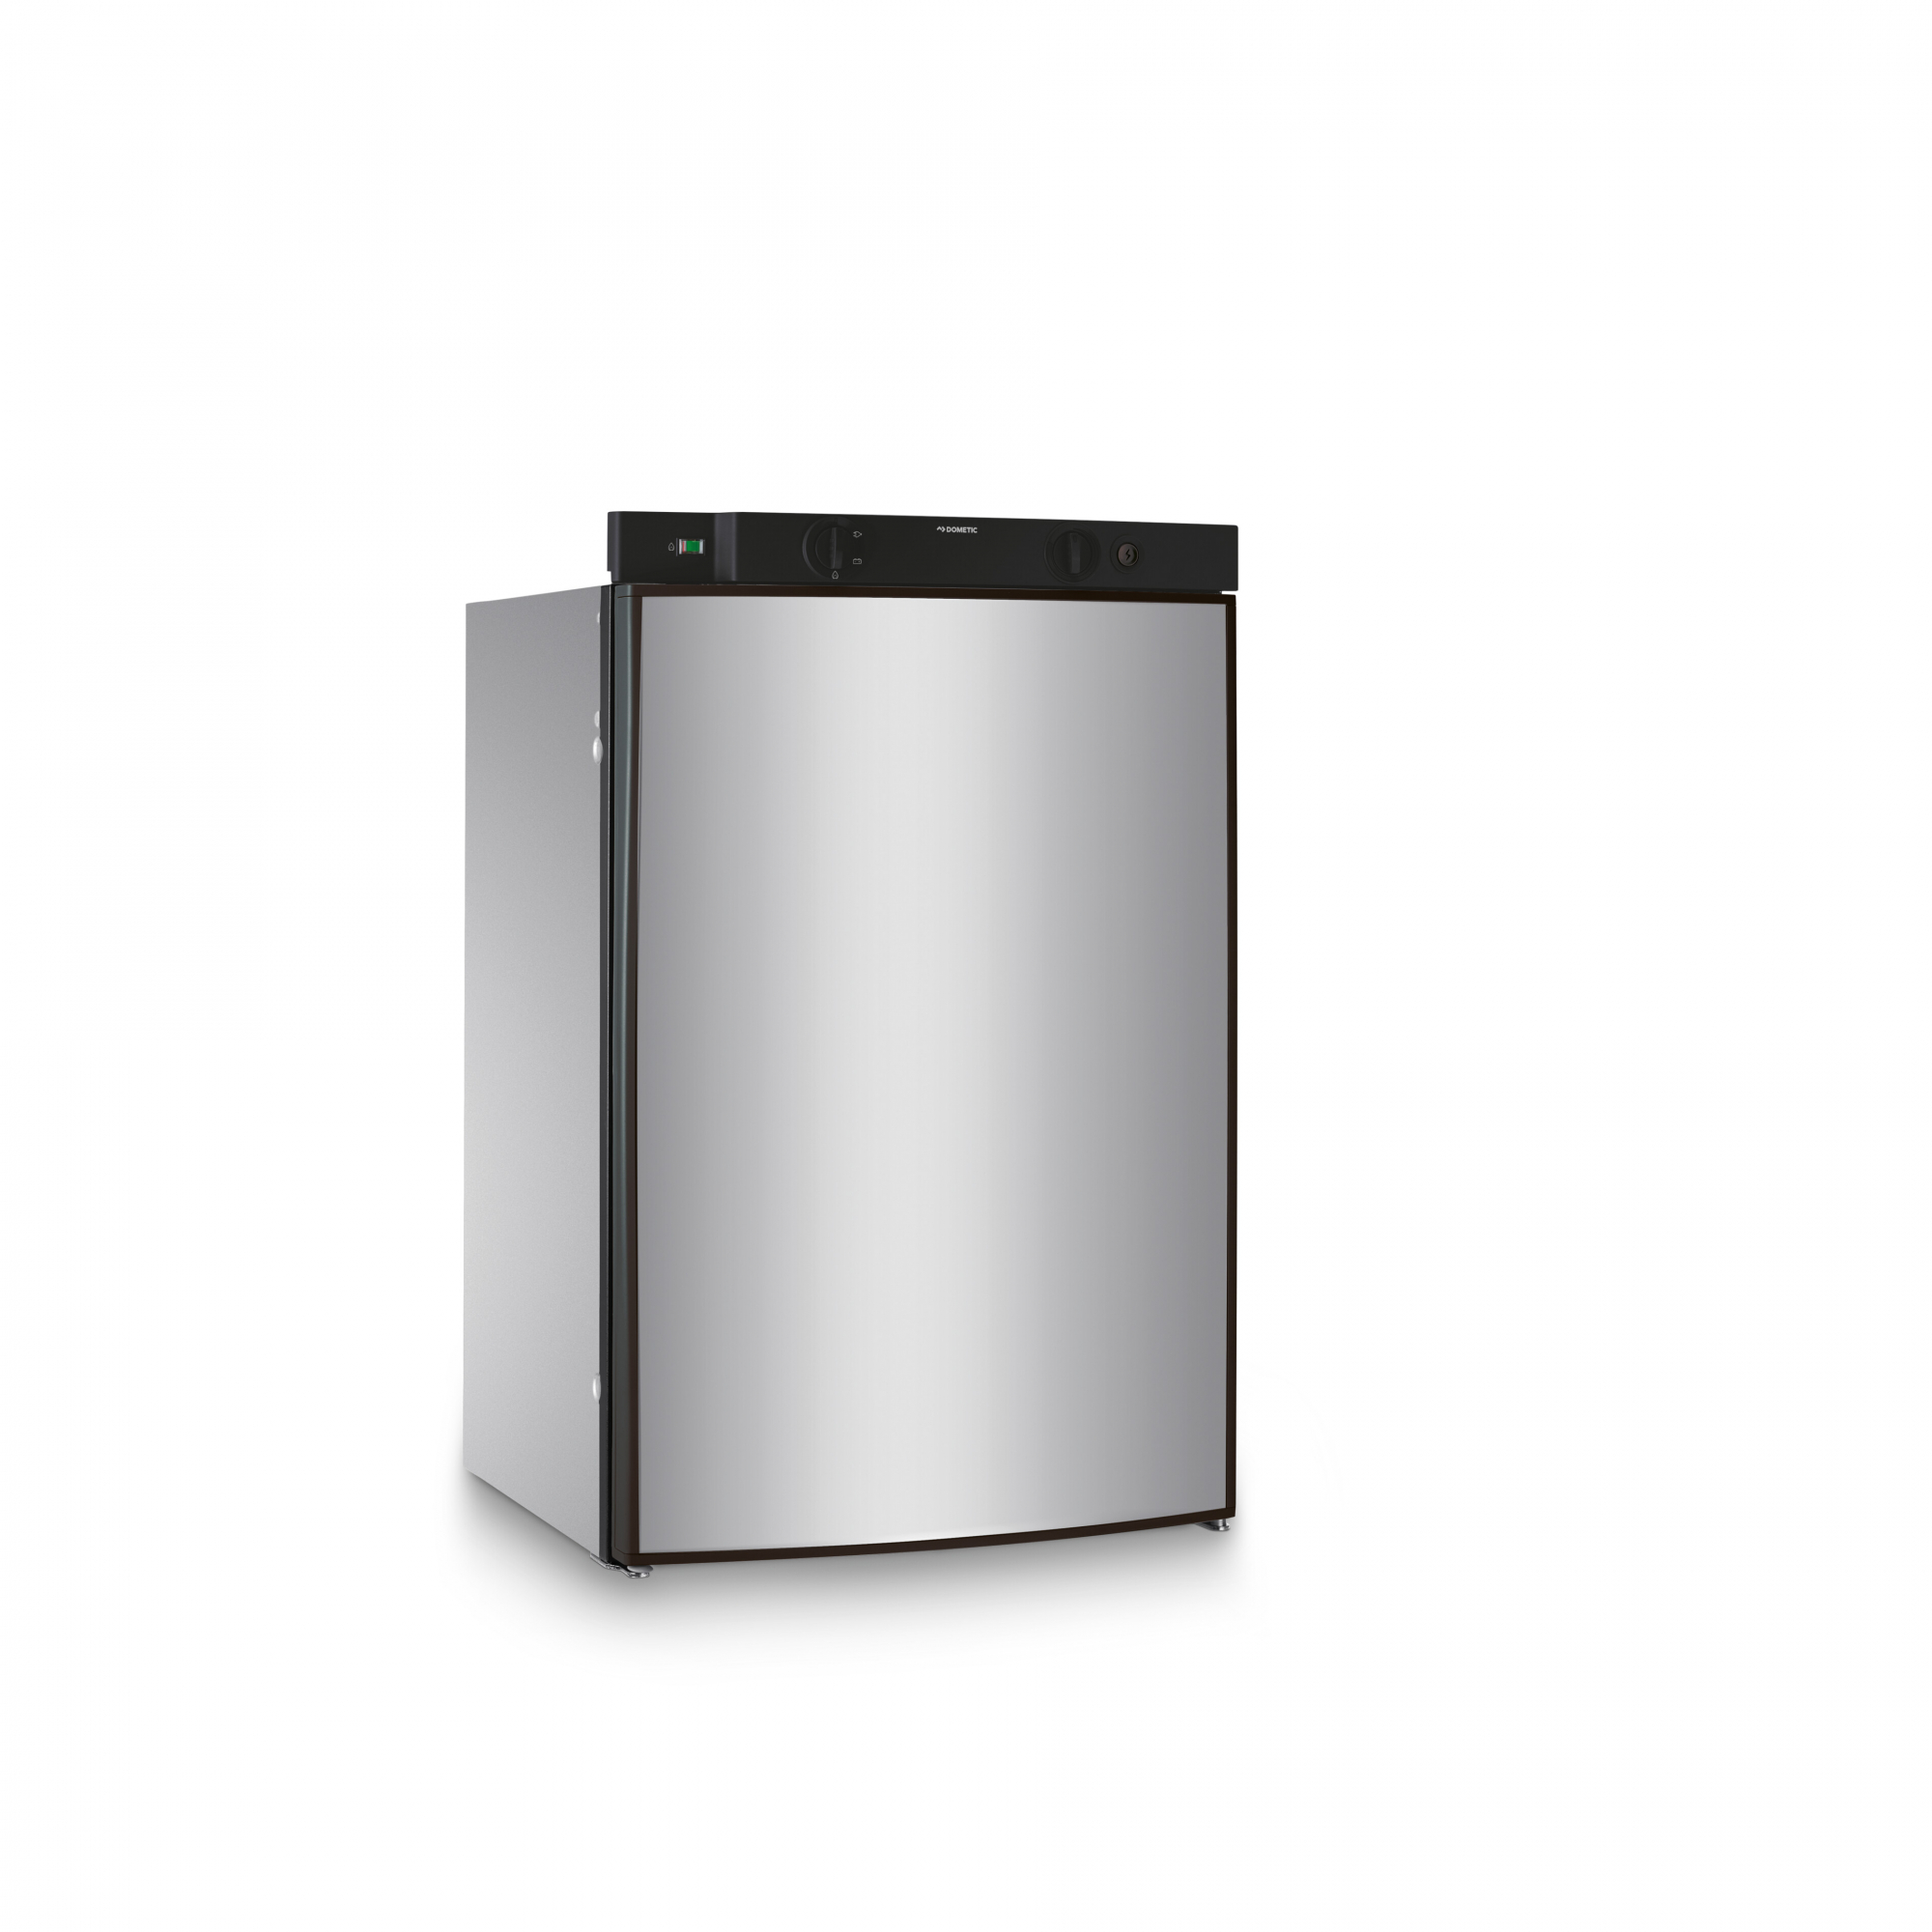 Абсорбционный холодильник с петлями справа Dometic RMS 8400 9500001579 486 x 568 x 821 мм 85 л трехрежимный блок питания